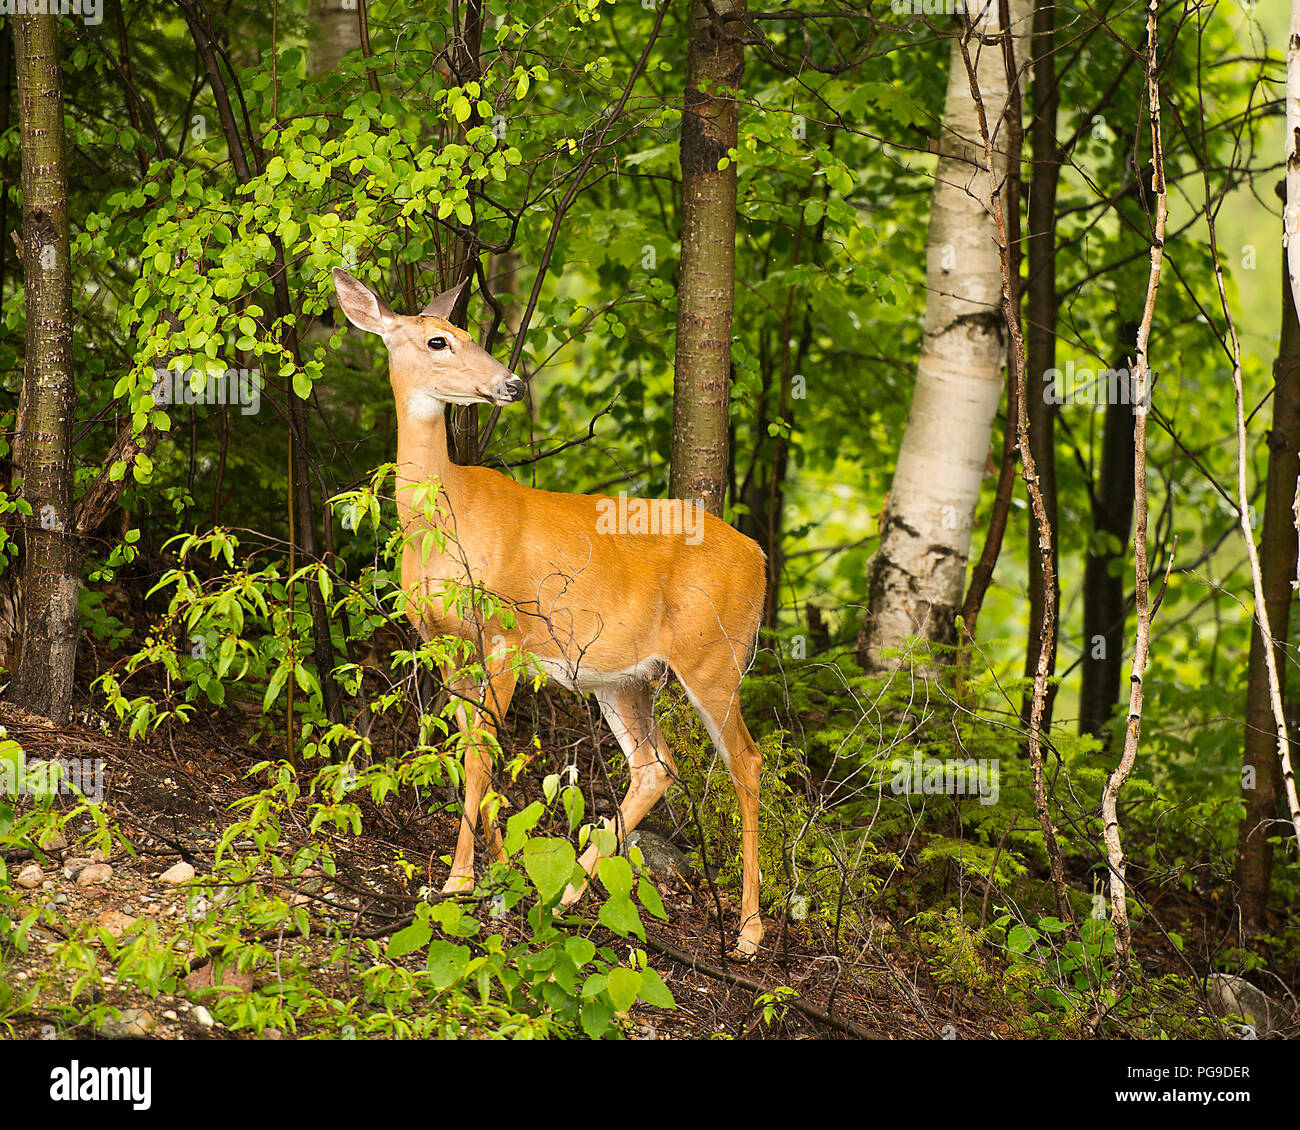 Deer animal dans la forêt voir de brown fourrure rougeâtre, corps, tête, oreilles, yeux, nez, des jambes avec un fond de feuillage des arbres dans son environnement. Banque D'Images